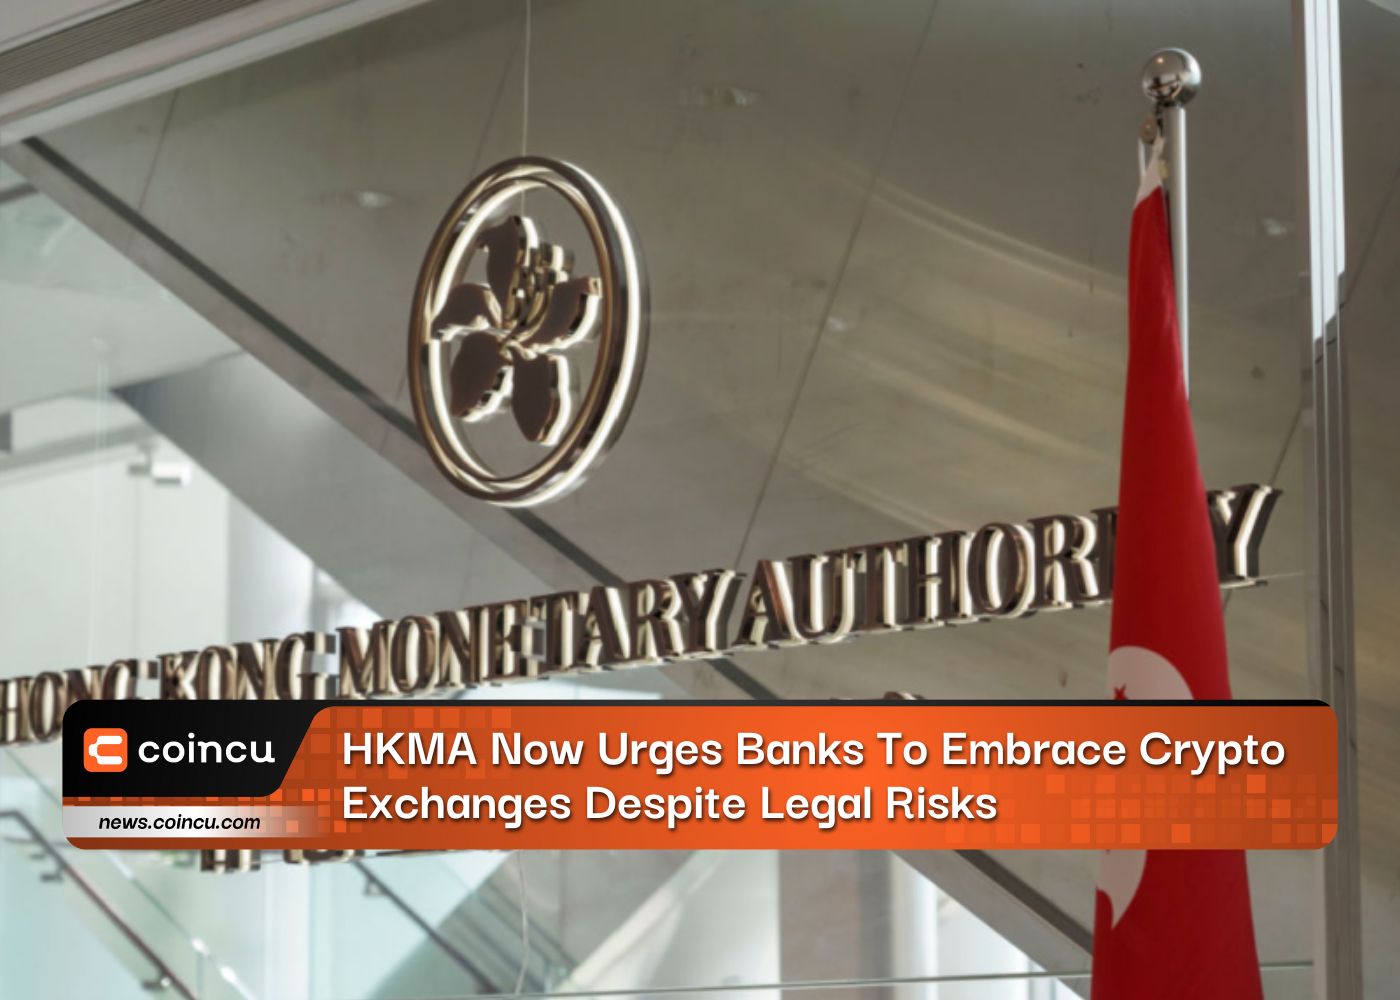 HKMA, 법적 위험에도 불구하고 은행들에 암호화폐 거래소 수용 촉구